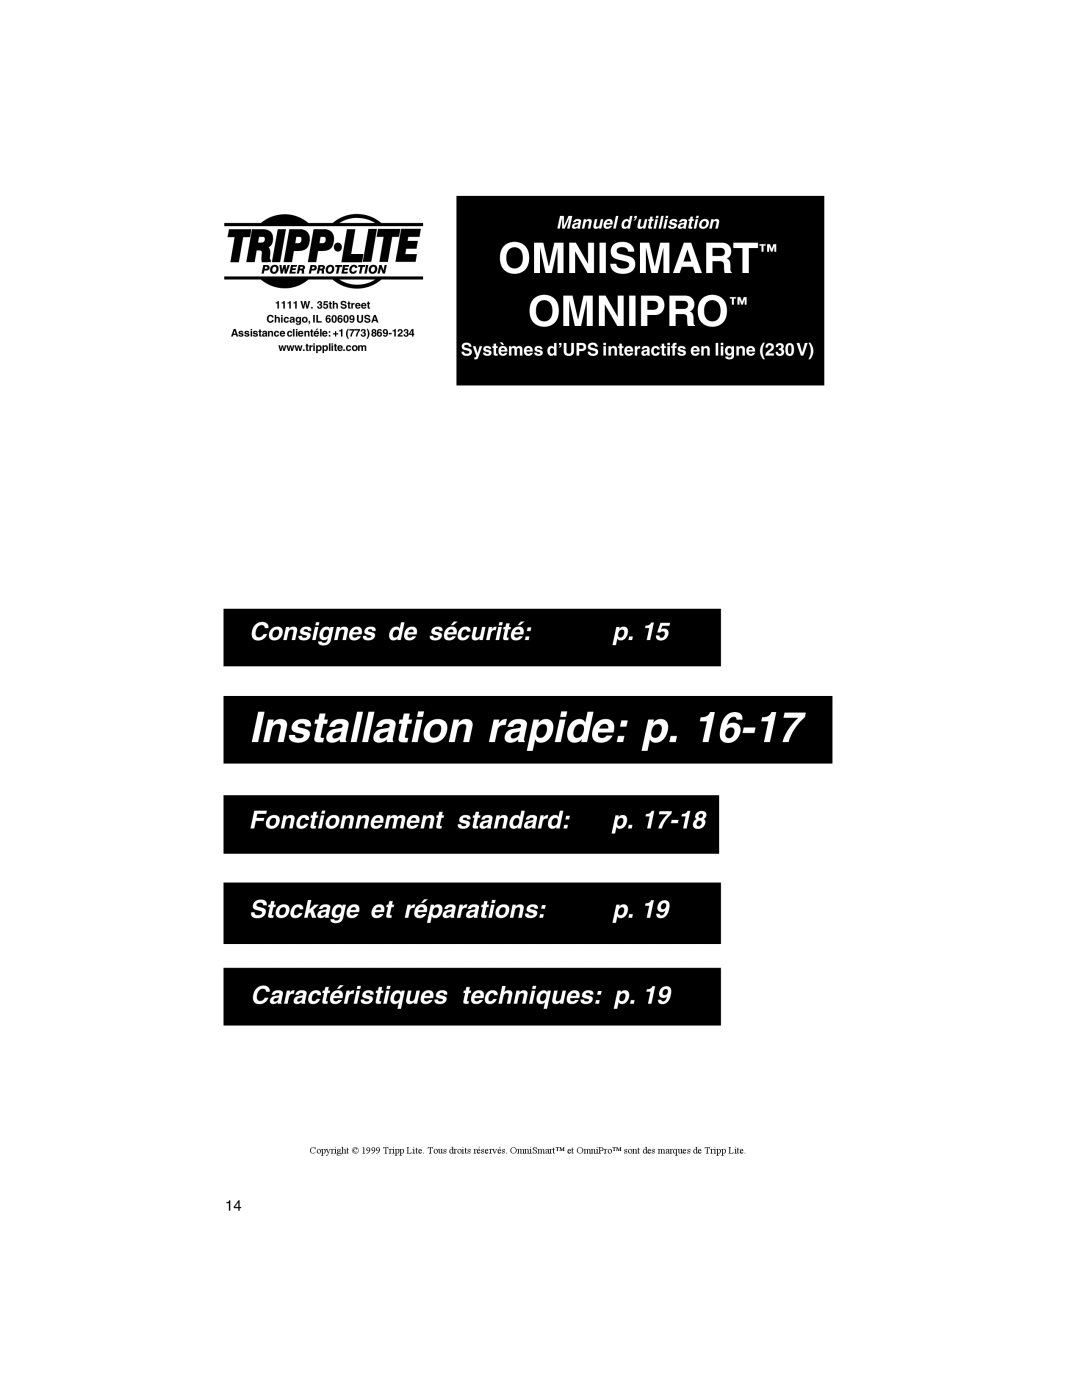 Tripp Lite OMNIPRO Installation rapide p, Consignes de sécurité, Fonctionnement standard p, Stockage et réparations 